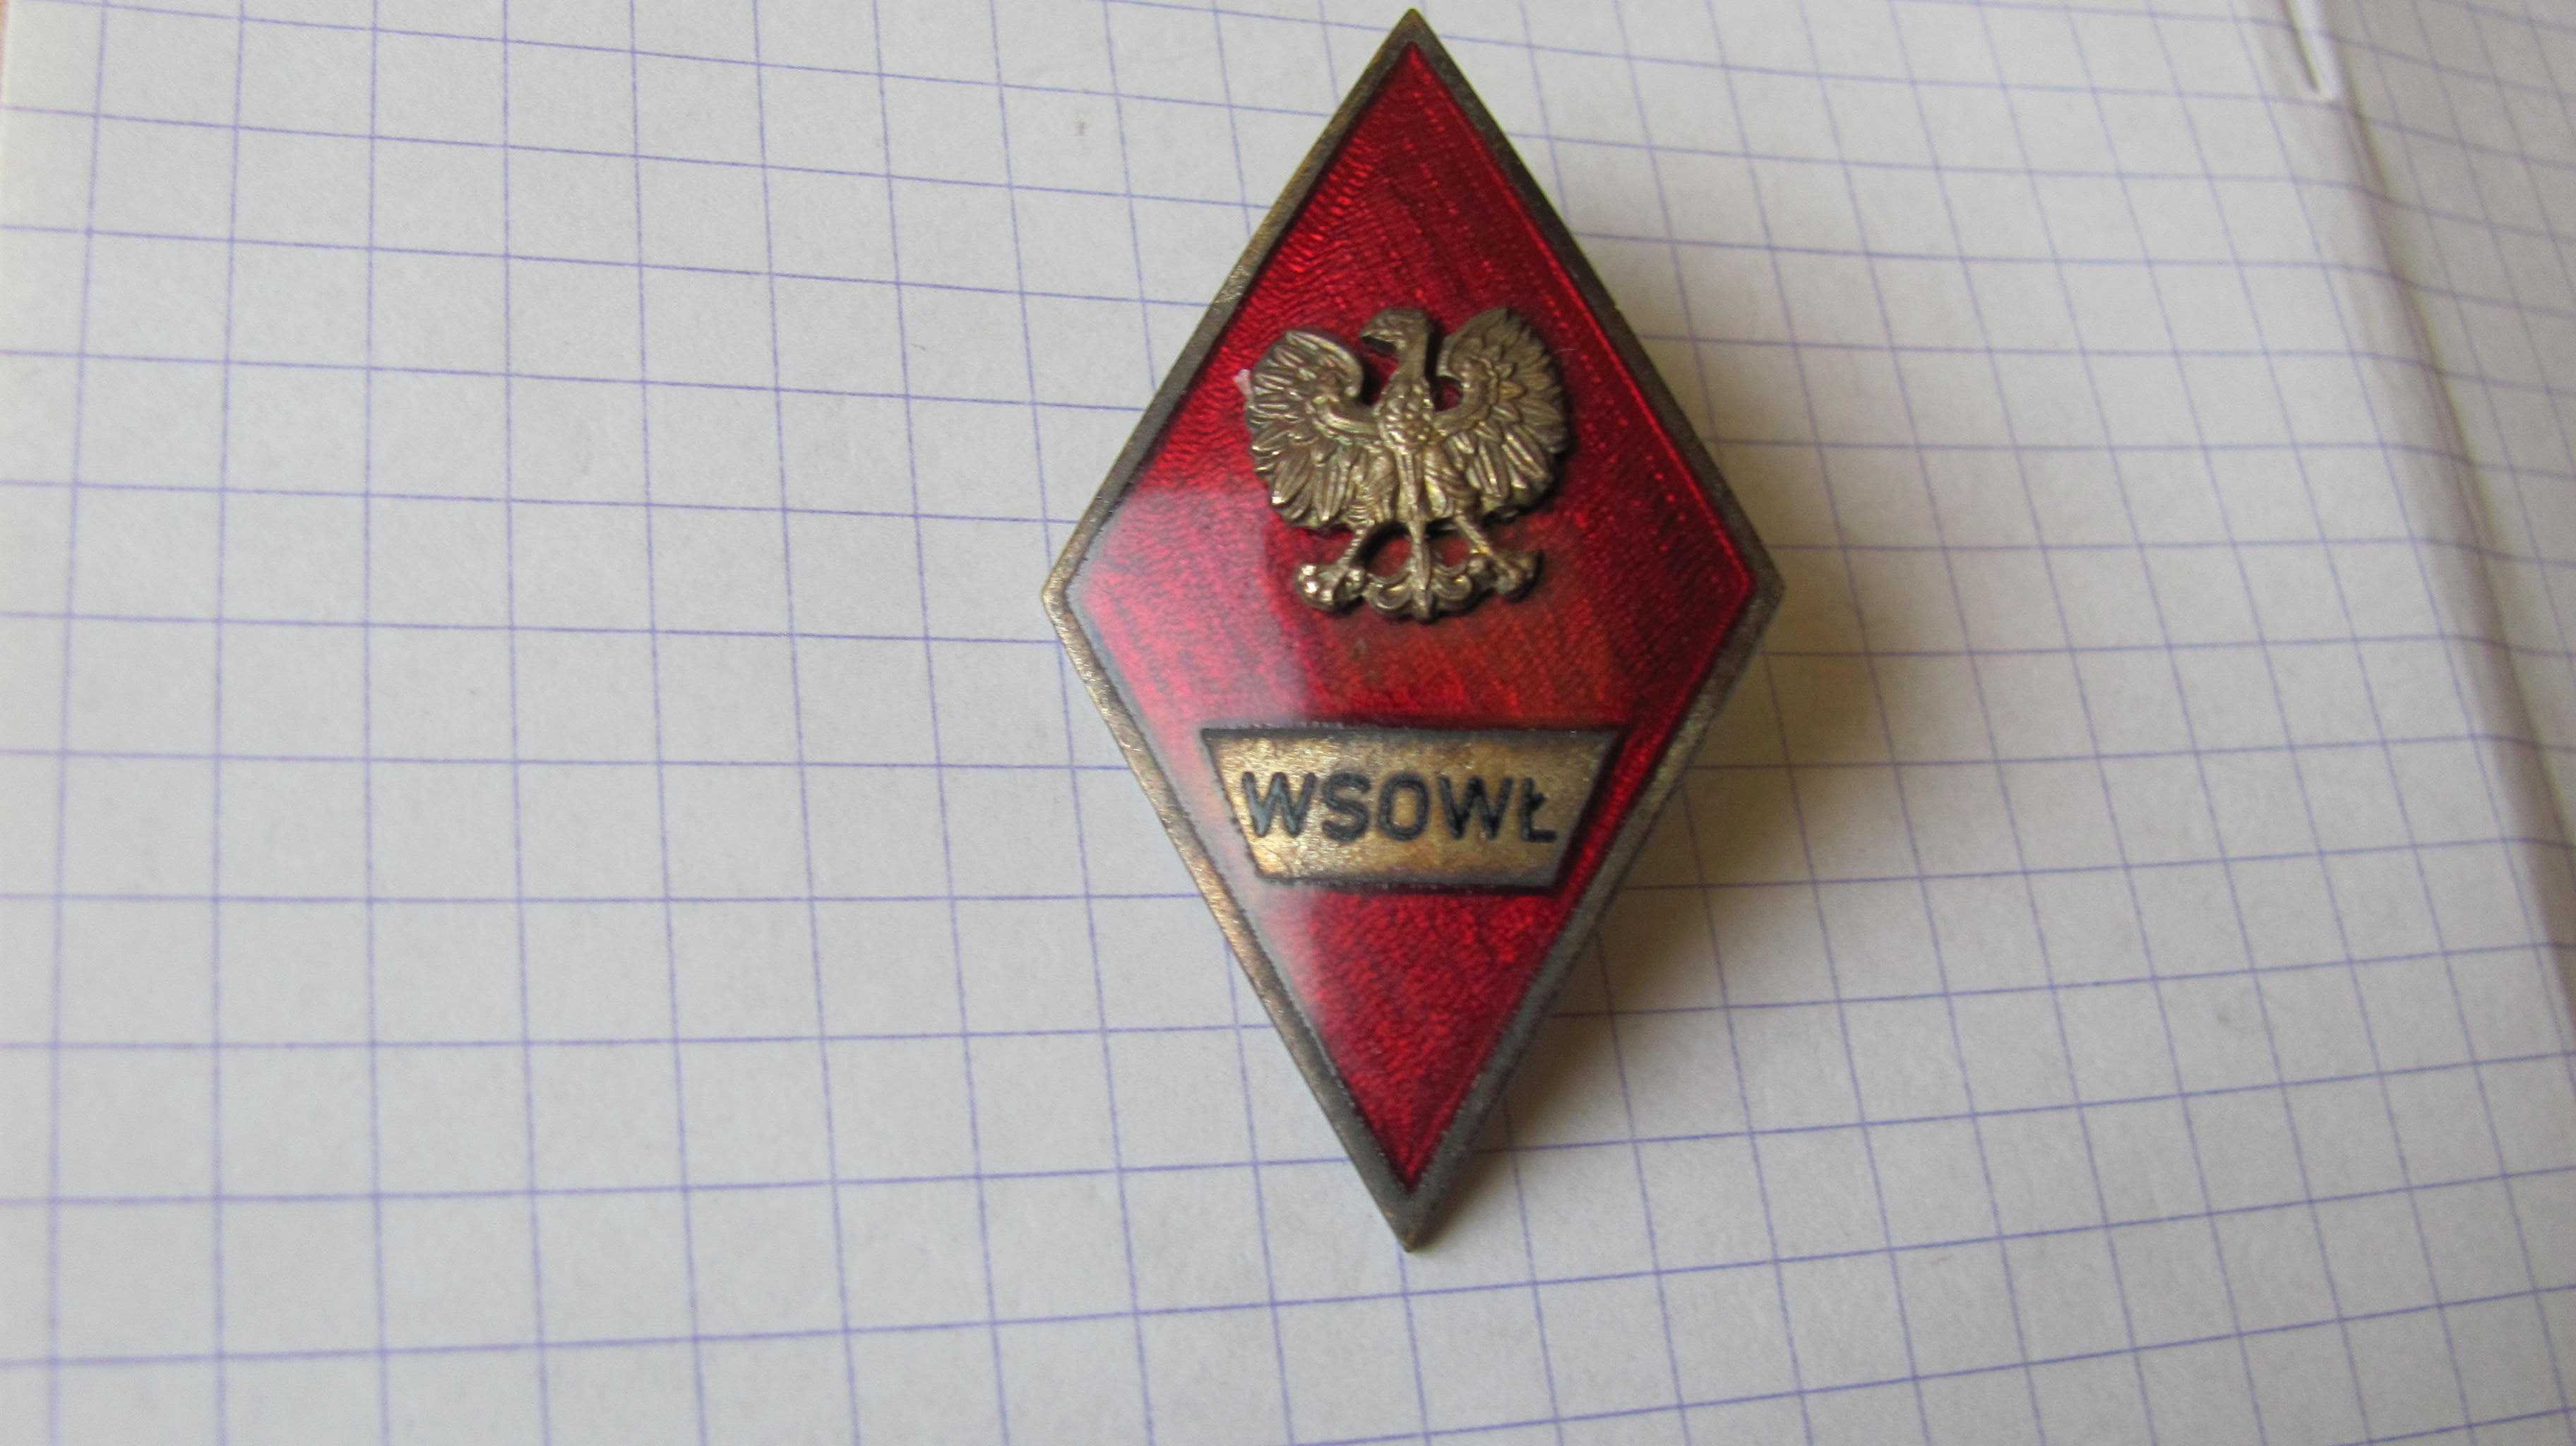 Absolwentka WSO Wojsk Łączności wz. 72, wąski rant,  b.rzadka